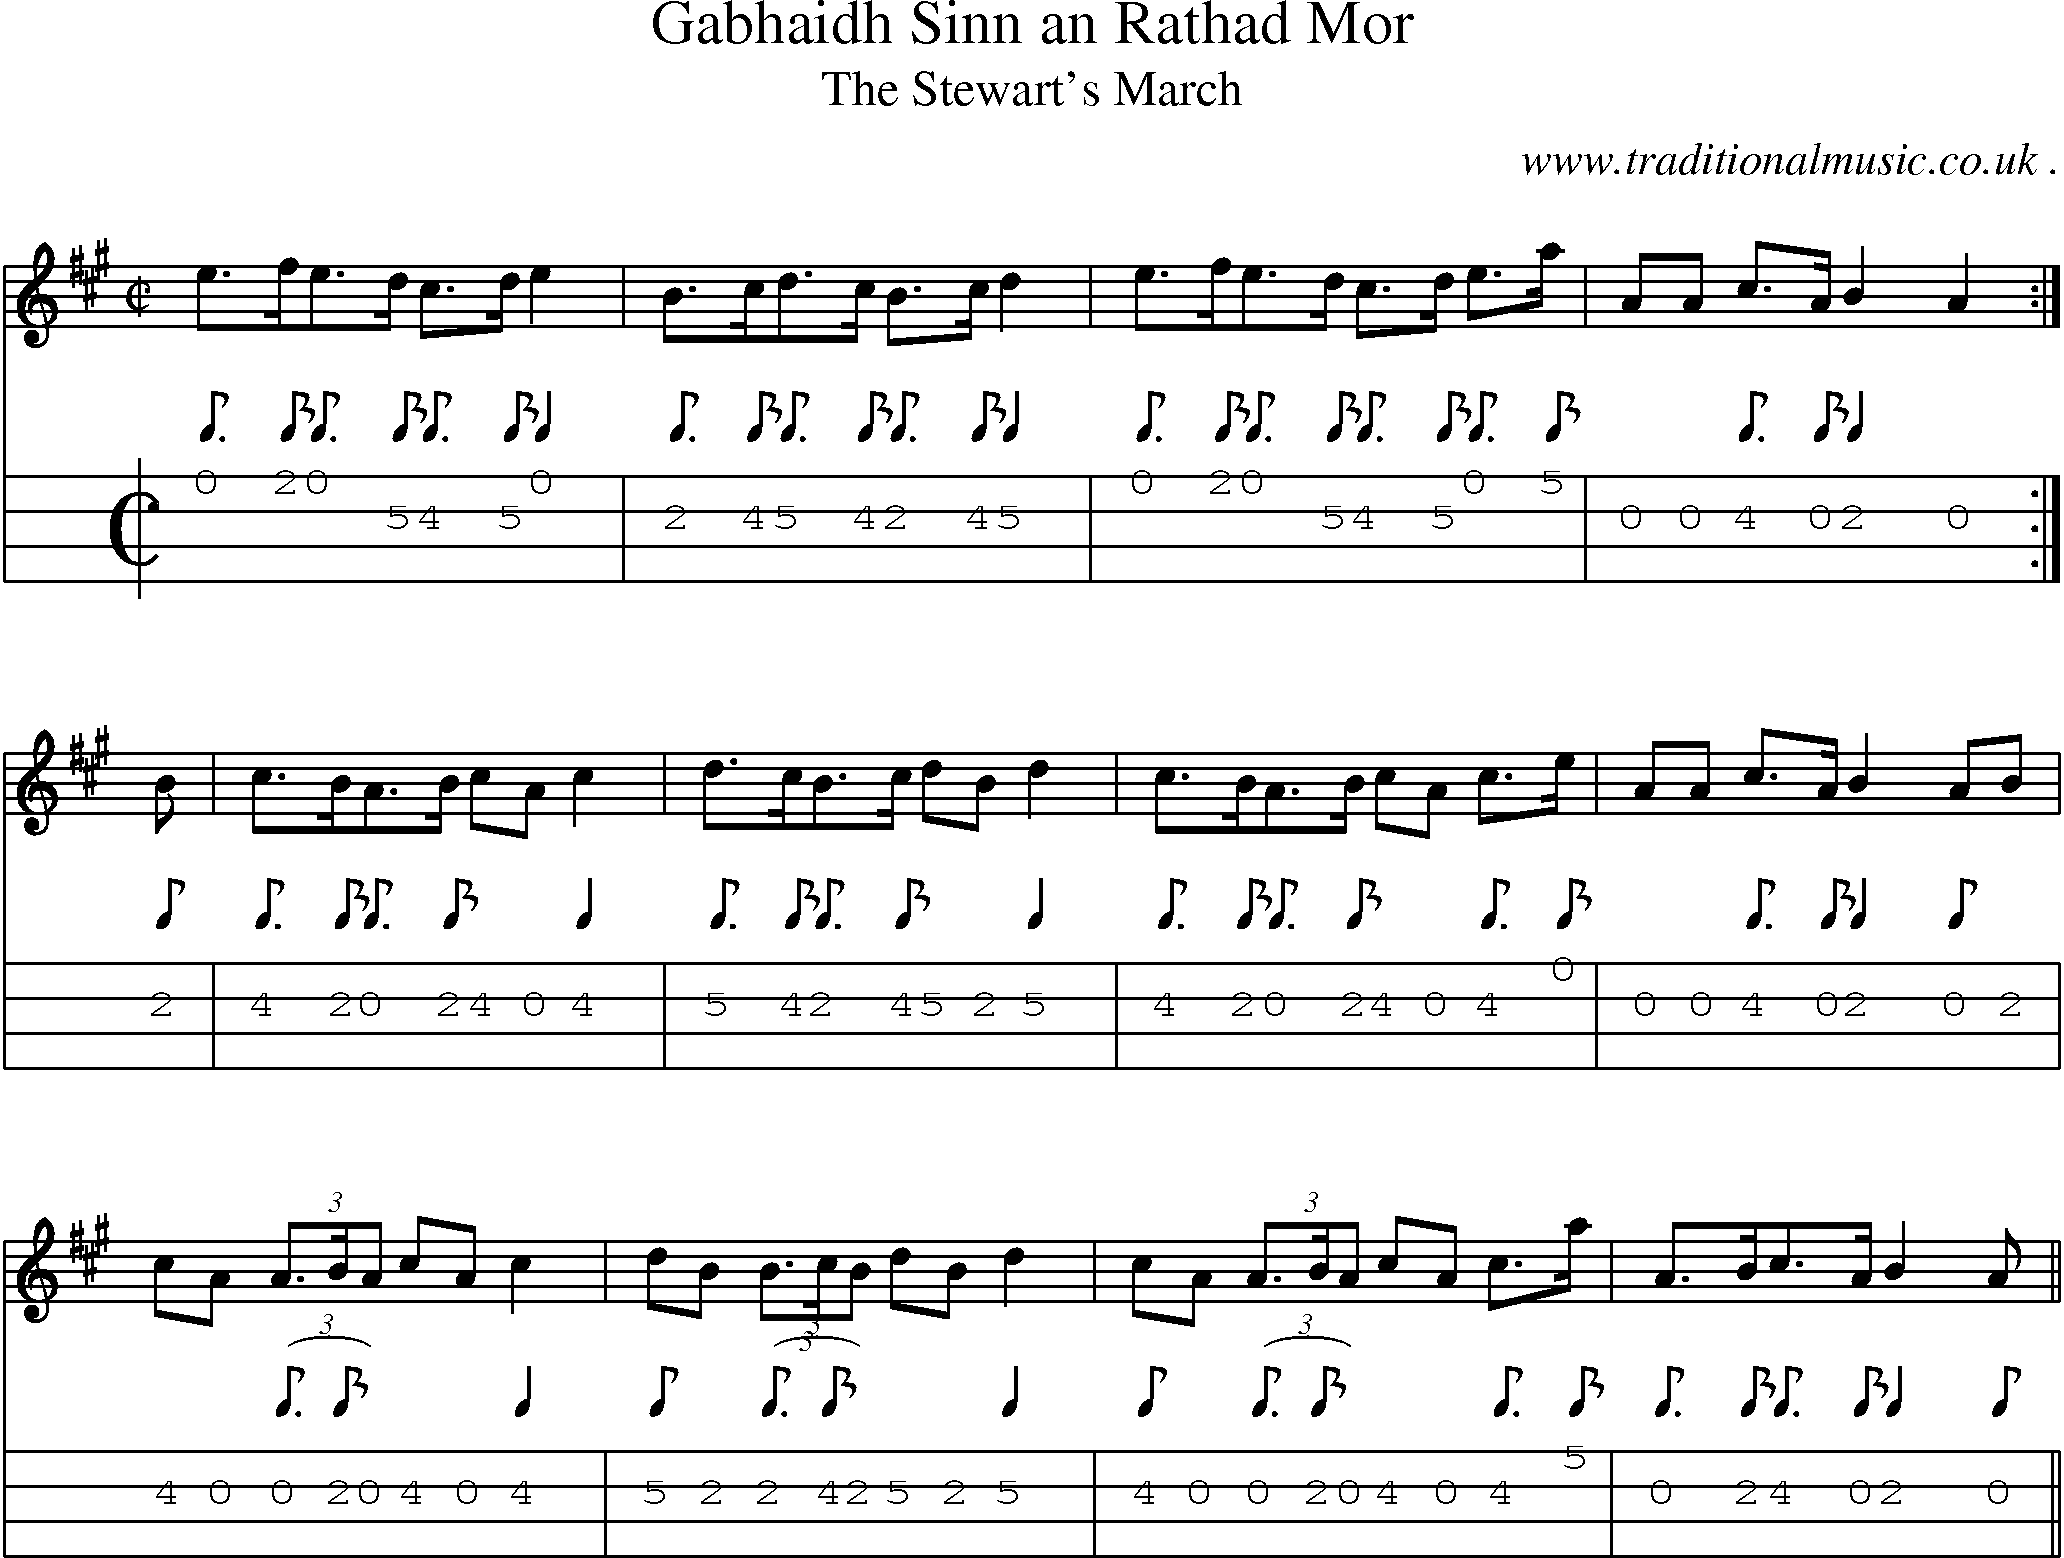 Sheet-music  score, Chords and Mandolin Tabs for Gabhaidh Sinn An Rathad Mor